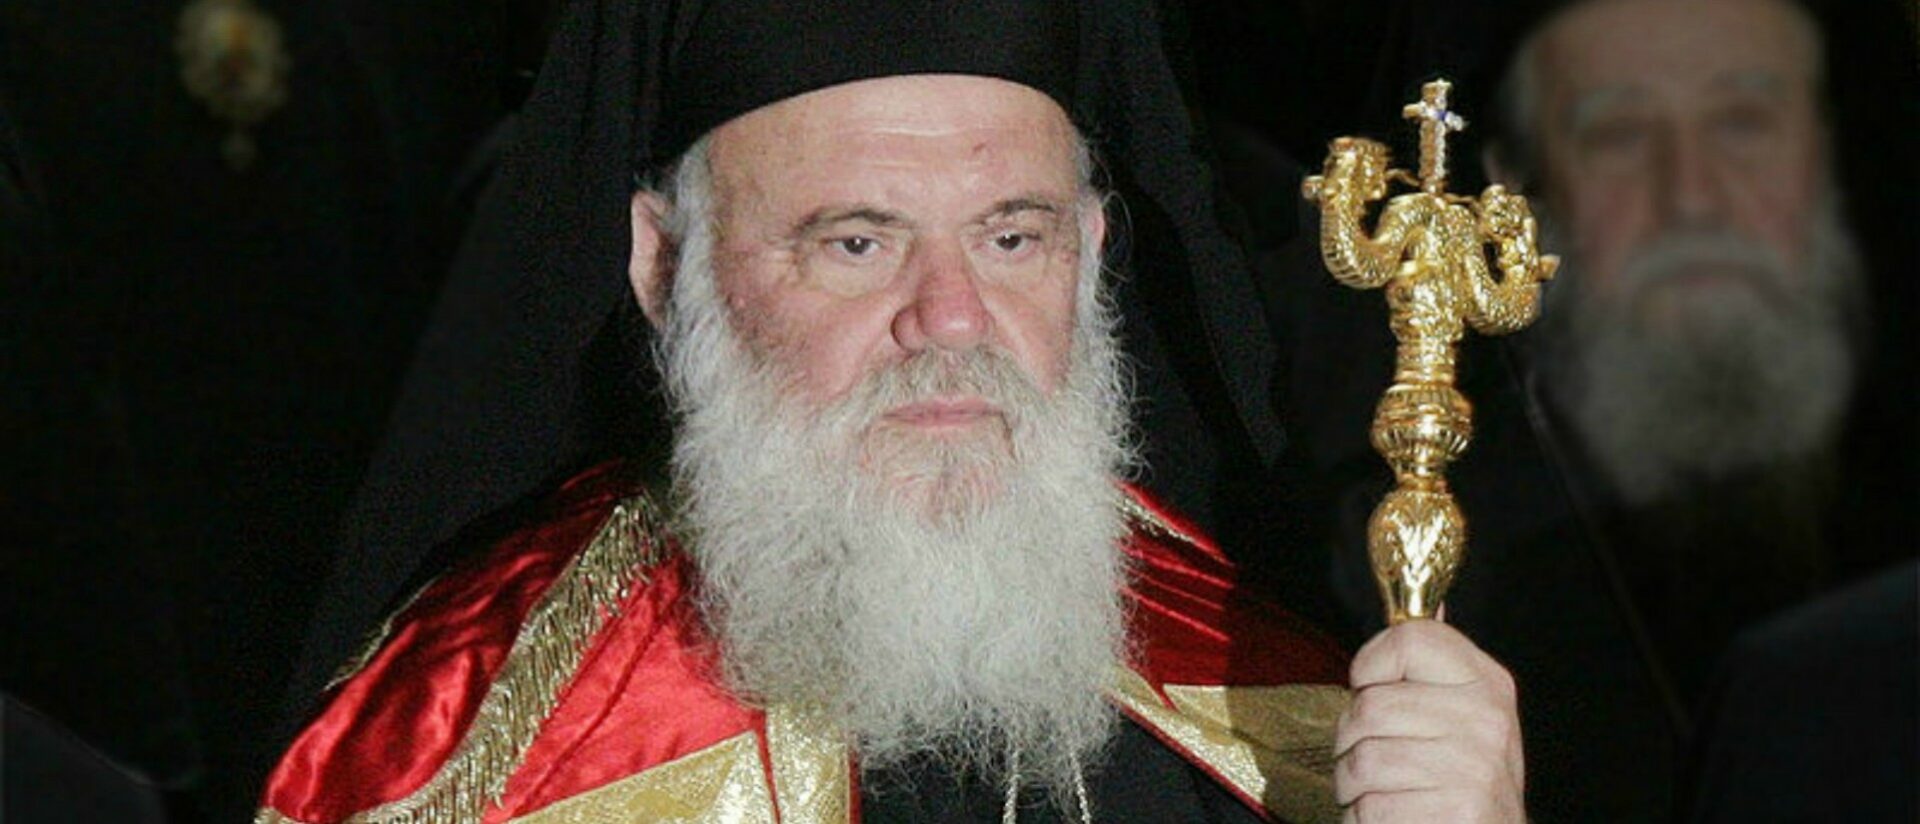 Jérôme II (Hieronymos),  archevêque d'Athènes et de toute la Grèce |   Evripidis Stylianidis flickr